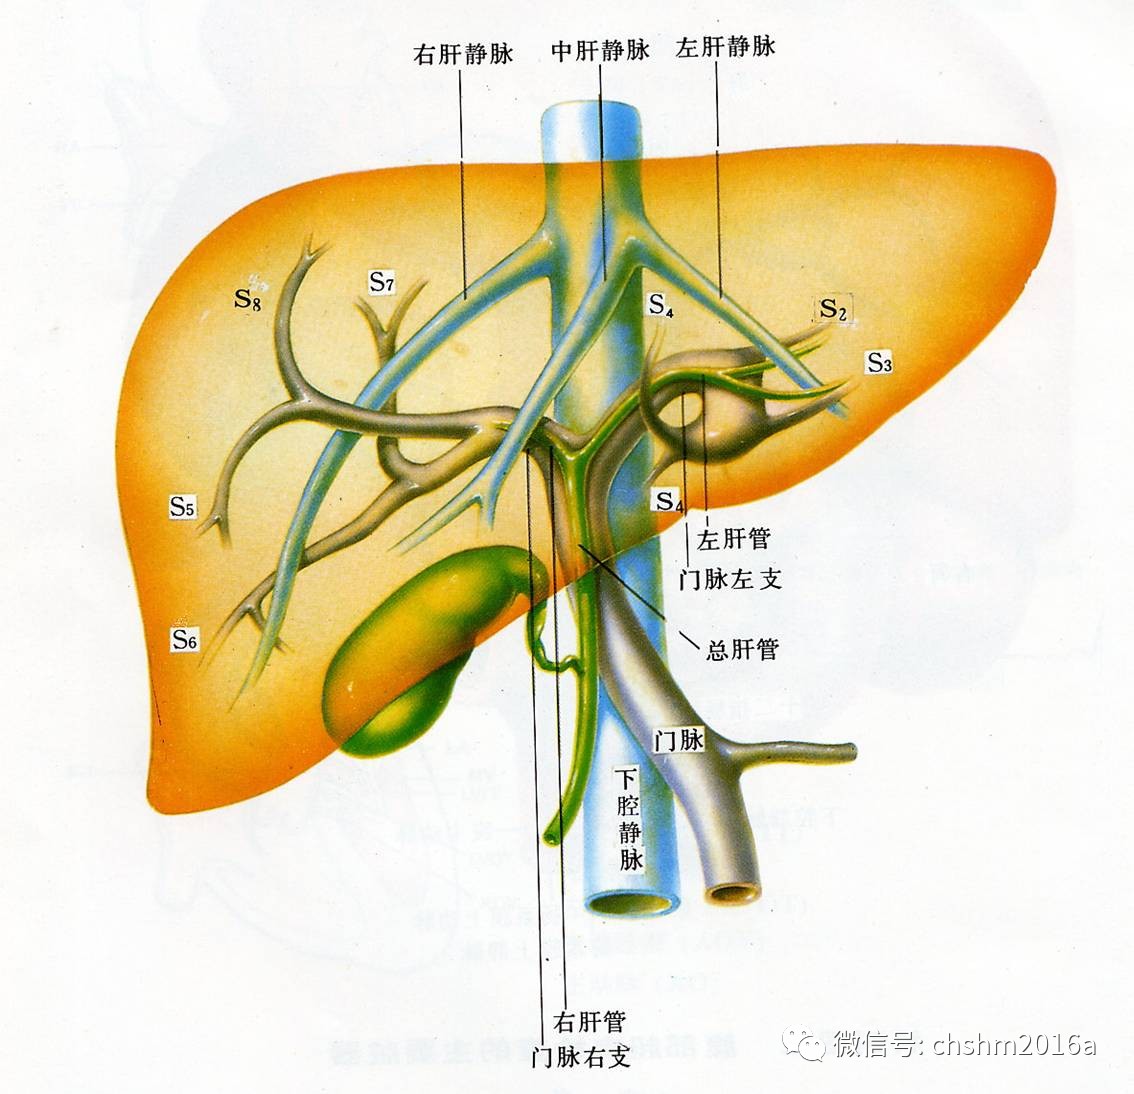 肝分叶解剖示意图图片